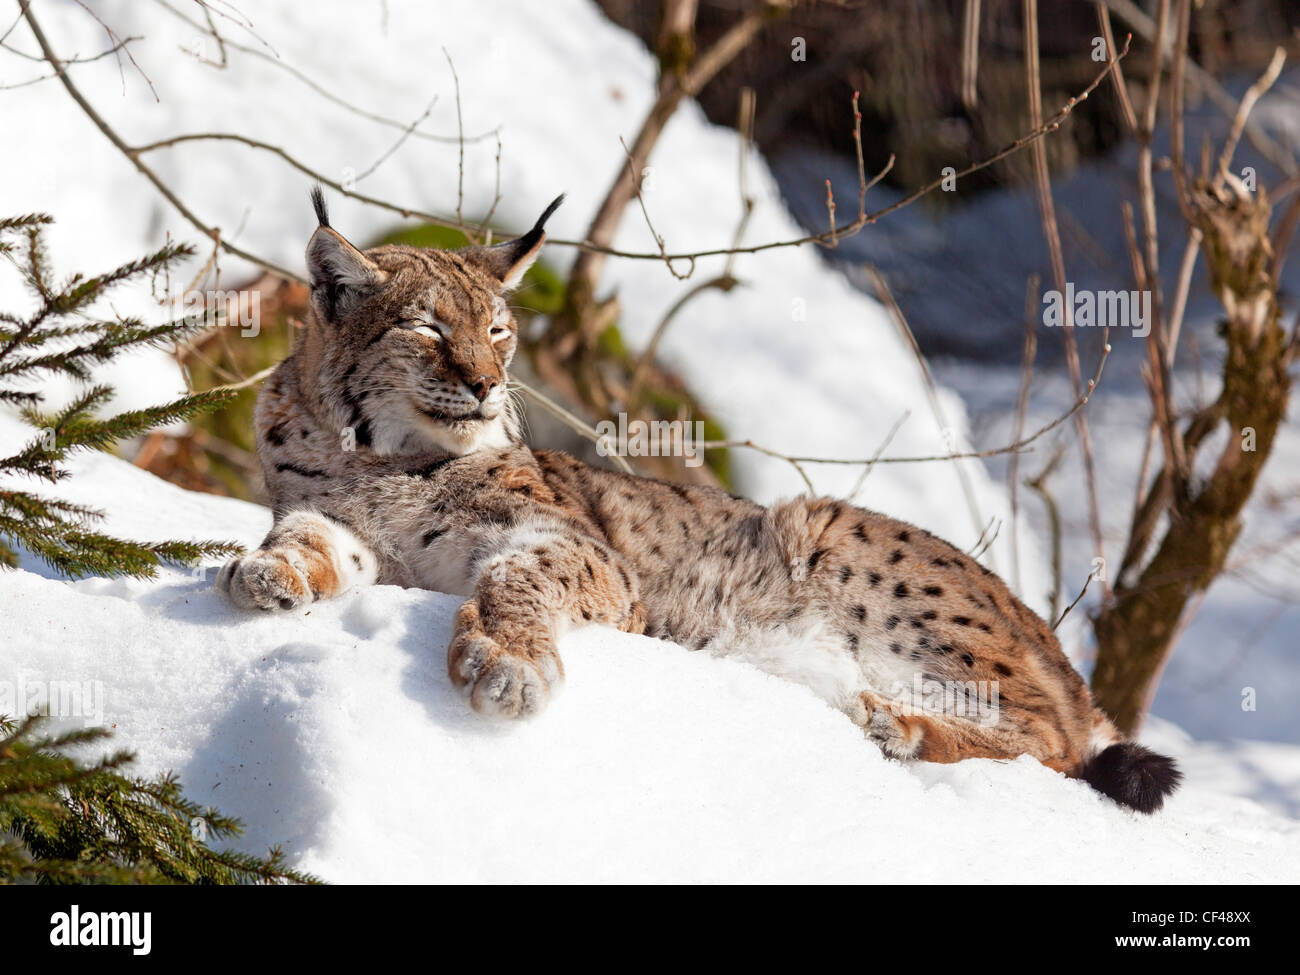 Lynx / Lynx lynx Stock Photo